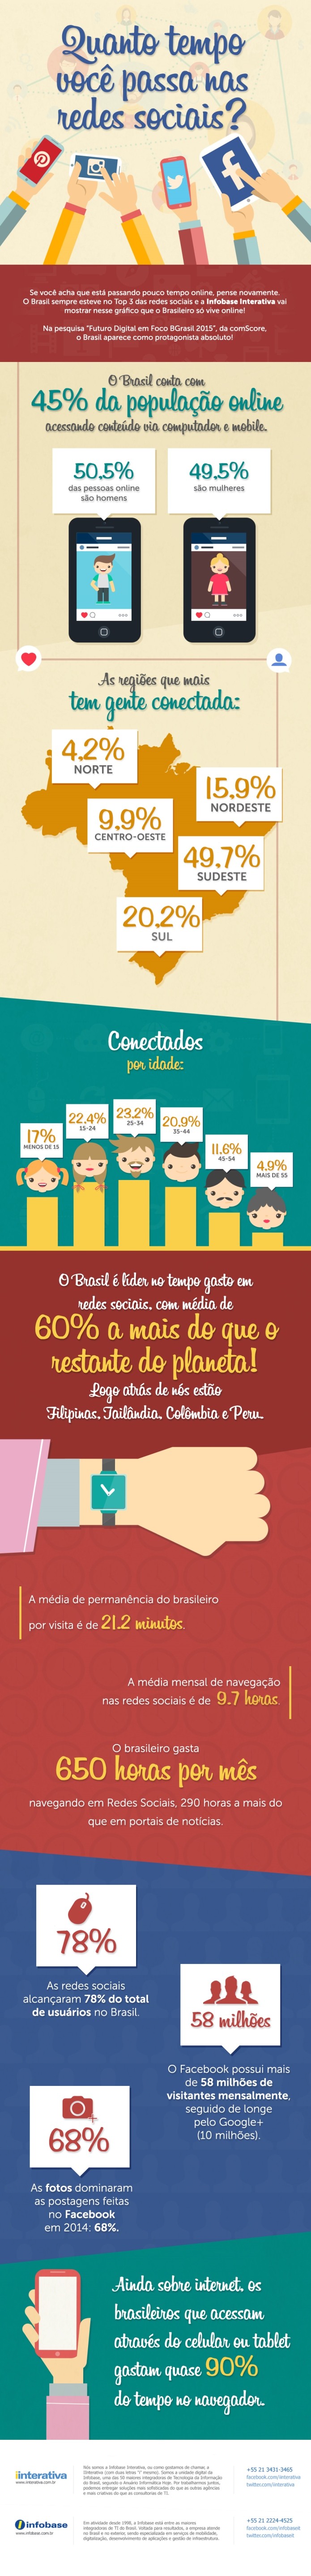 45% dos brasileiro gasta 650 horas em média por mês nas redes sociais (Foto: Reprodução/IInterativa)